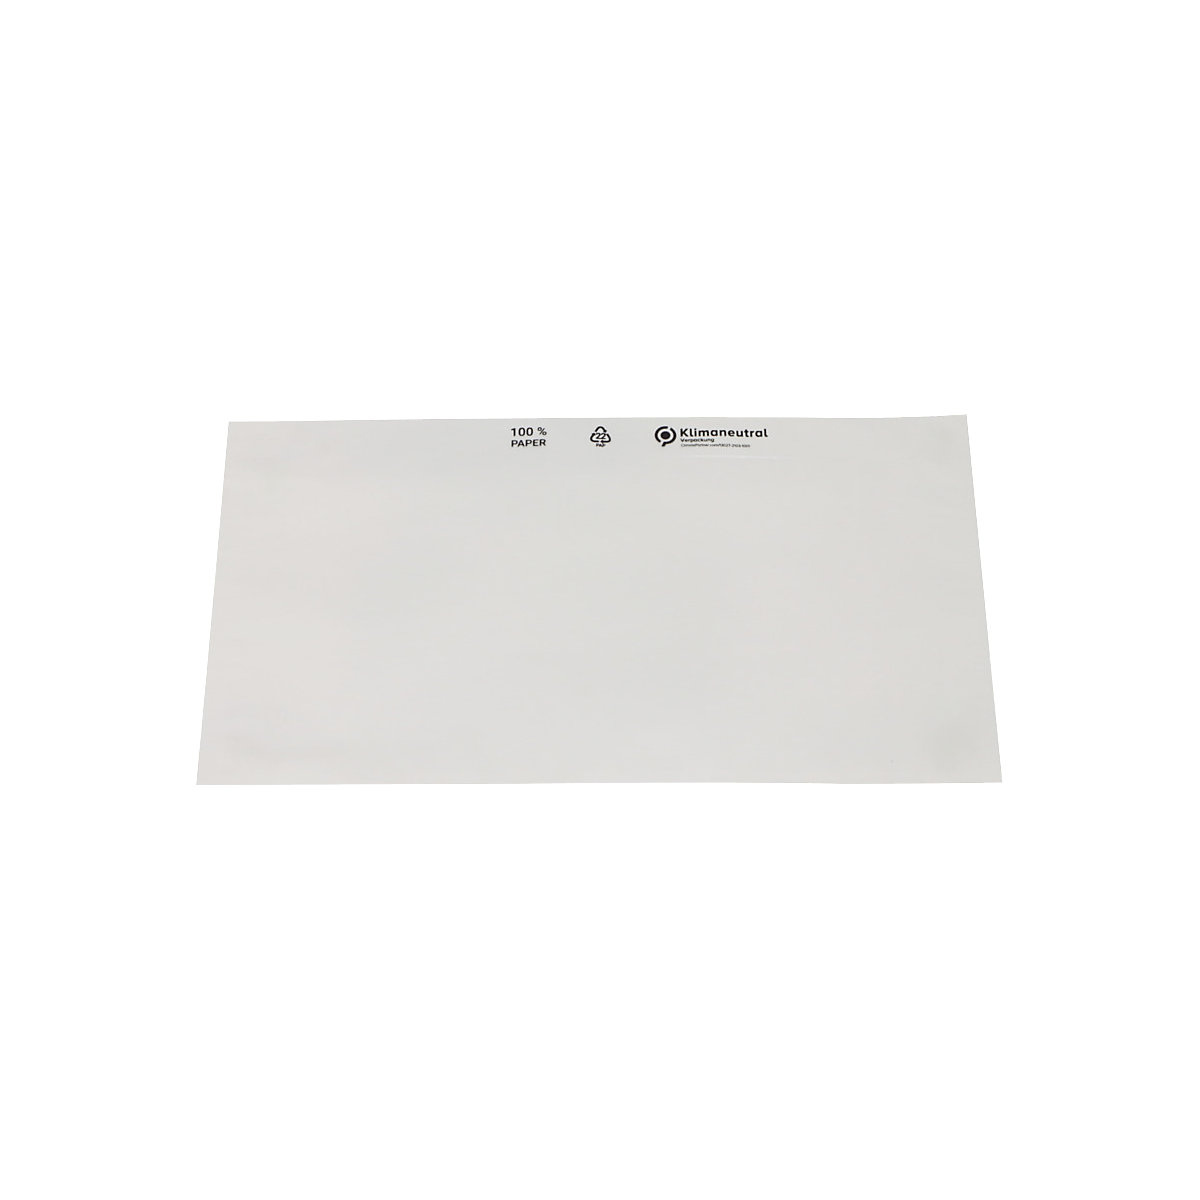 Dokumententaschen aus Papier terra, Transparent, VE 1000 Stk, LxB 240 x 131 mm-6